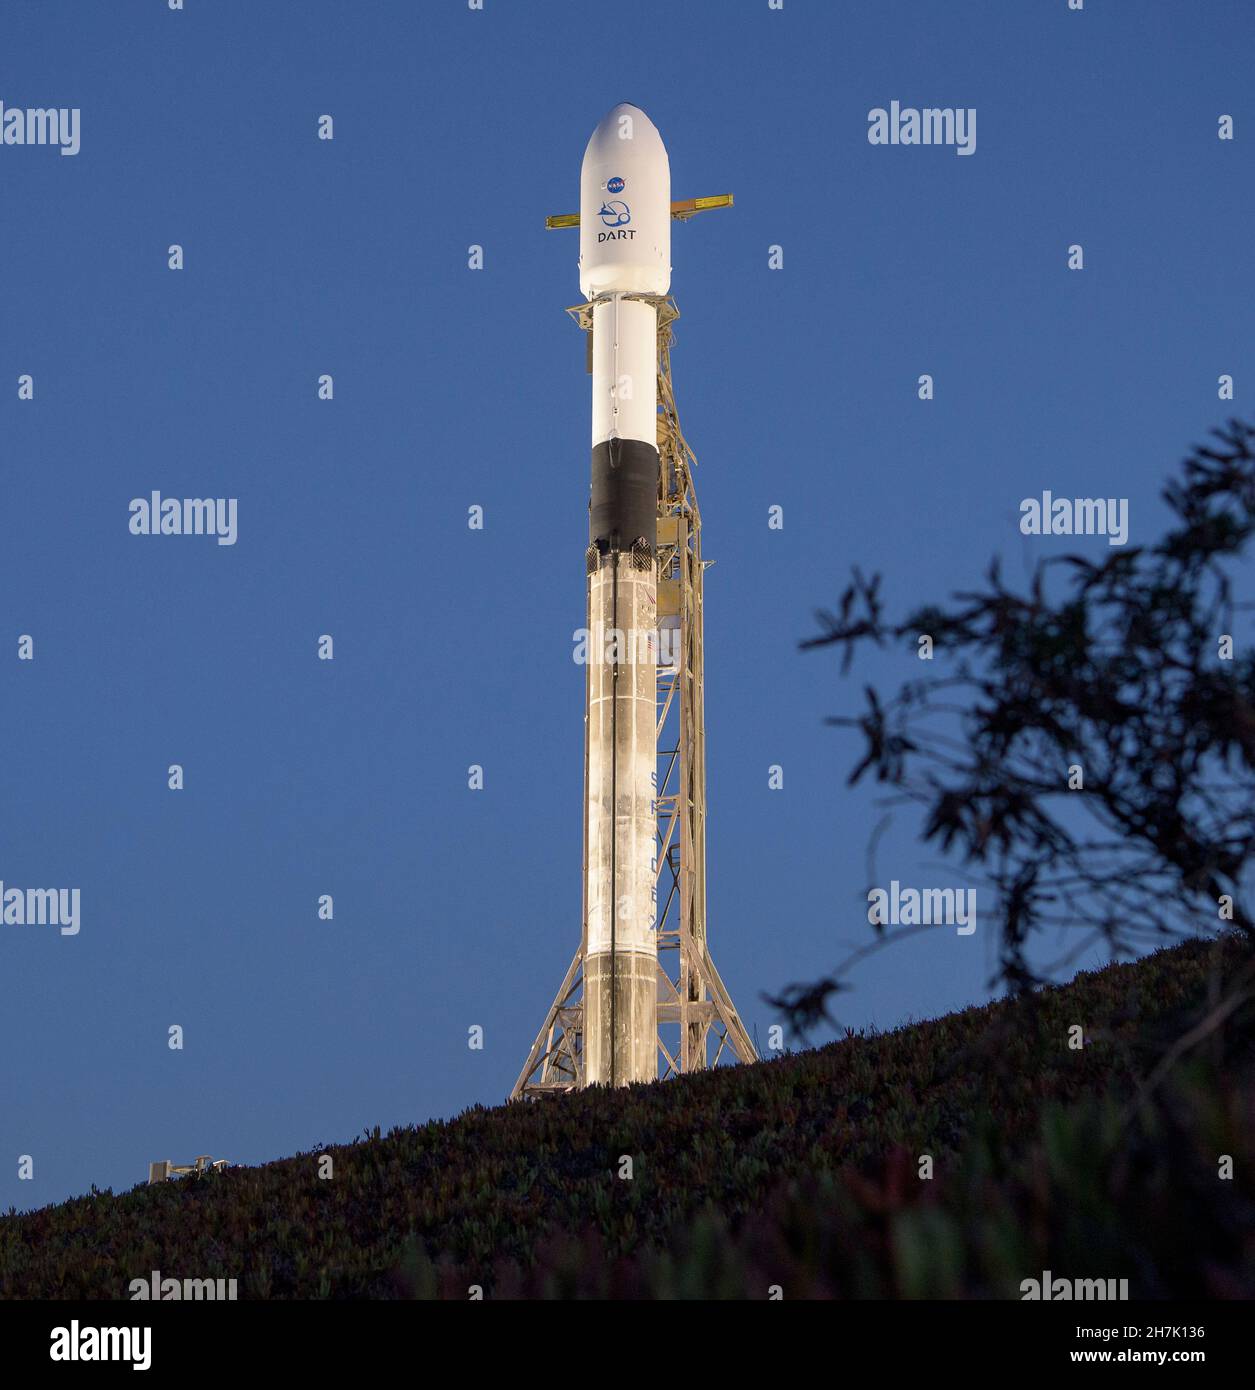 La fusée SpaceX Falcon 9 avec le test de redirection à double astéroïde, ou DART, vaisseau spatial à bord, est vue au lever du soleil, le mardi 23 novembre 2021, au complexe de lancement spatial 4E, base spatiale de Vandenberg en Californie.DART est le premier test de défense planétaire à grande échelle au monde, démontrant une méthode de la technologie de déflexion des astéroïdes.La mission a été construite et est gérée par l'APL Johns Hopkins pour le Bureau de coordination de la défense planétaire de la NASA. Crédit obligatoire : Bill Ingalls/NASA via CNP/MediaPunch Banque D'Images